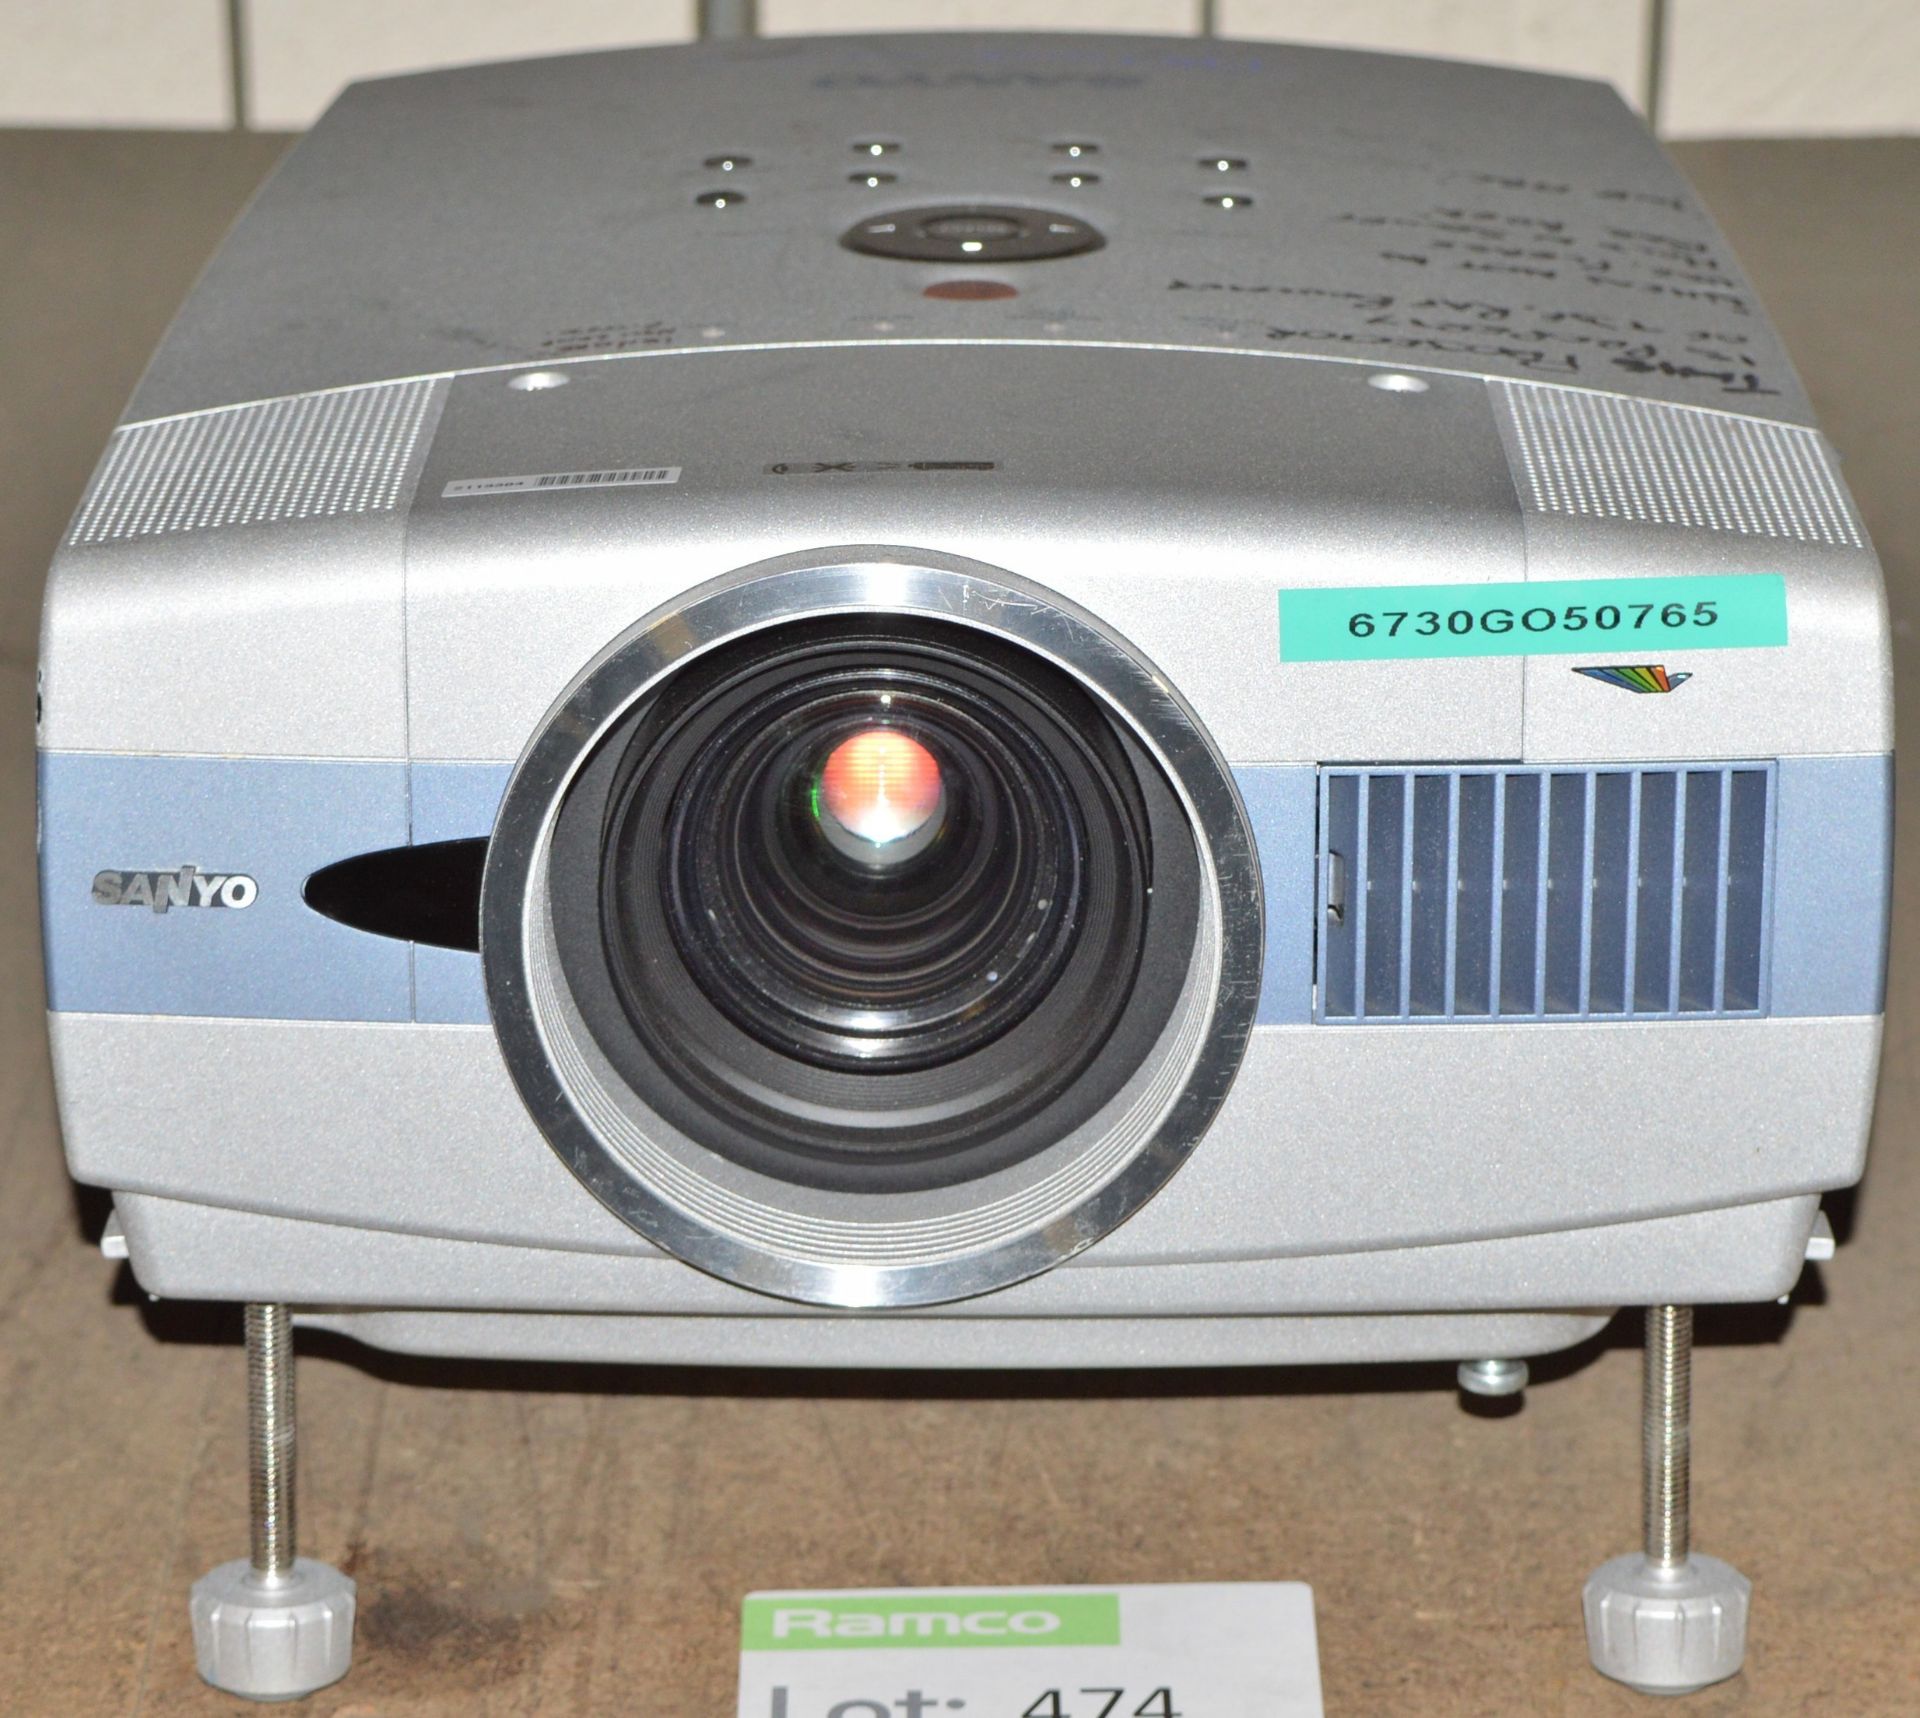 Sanyo Pro XtraX Projector